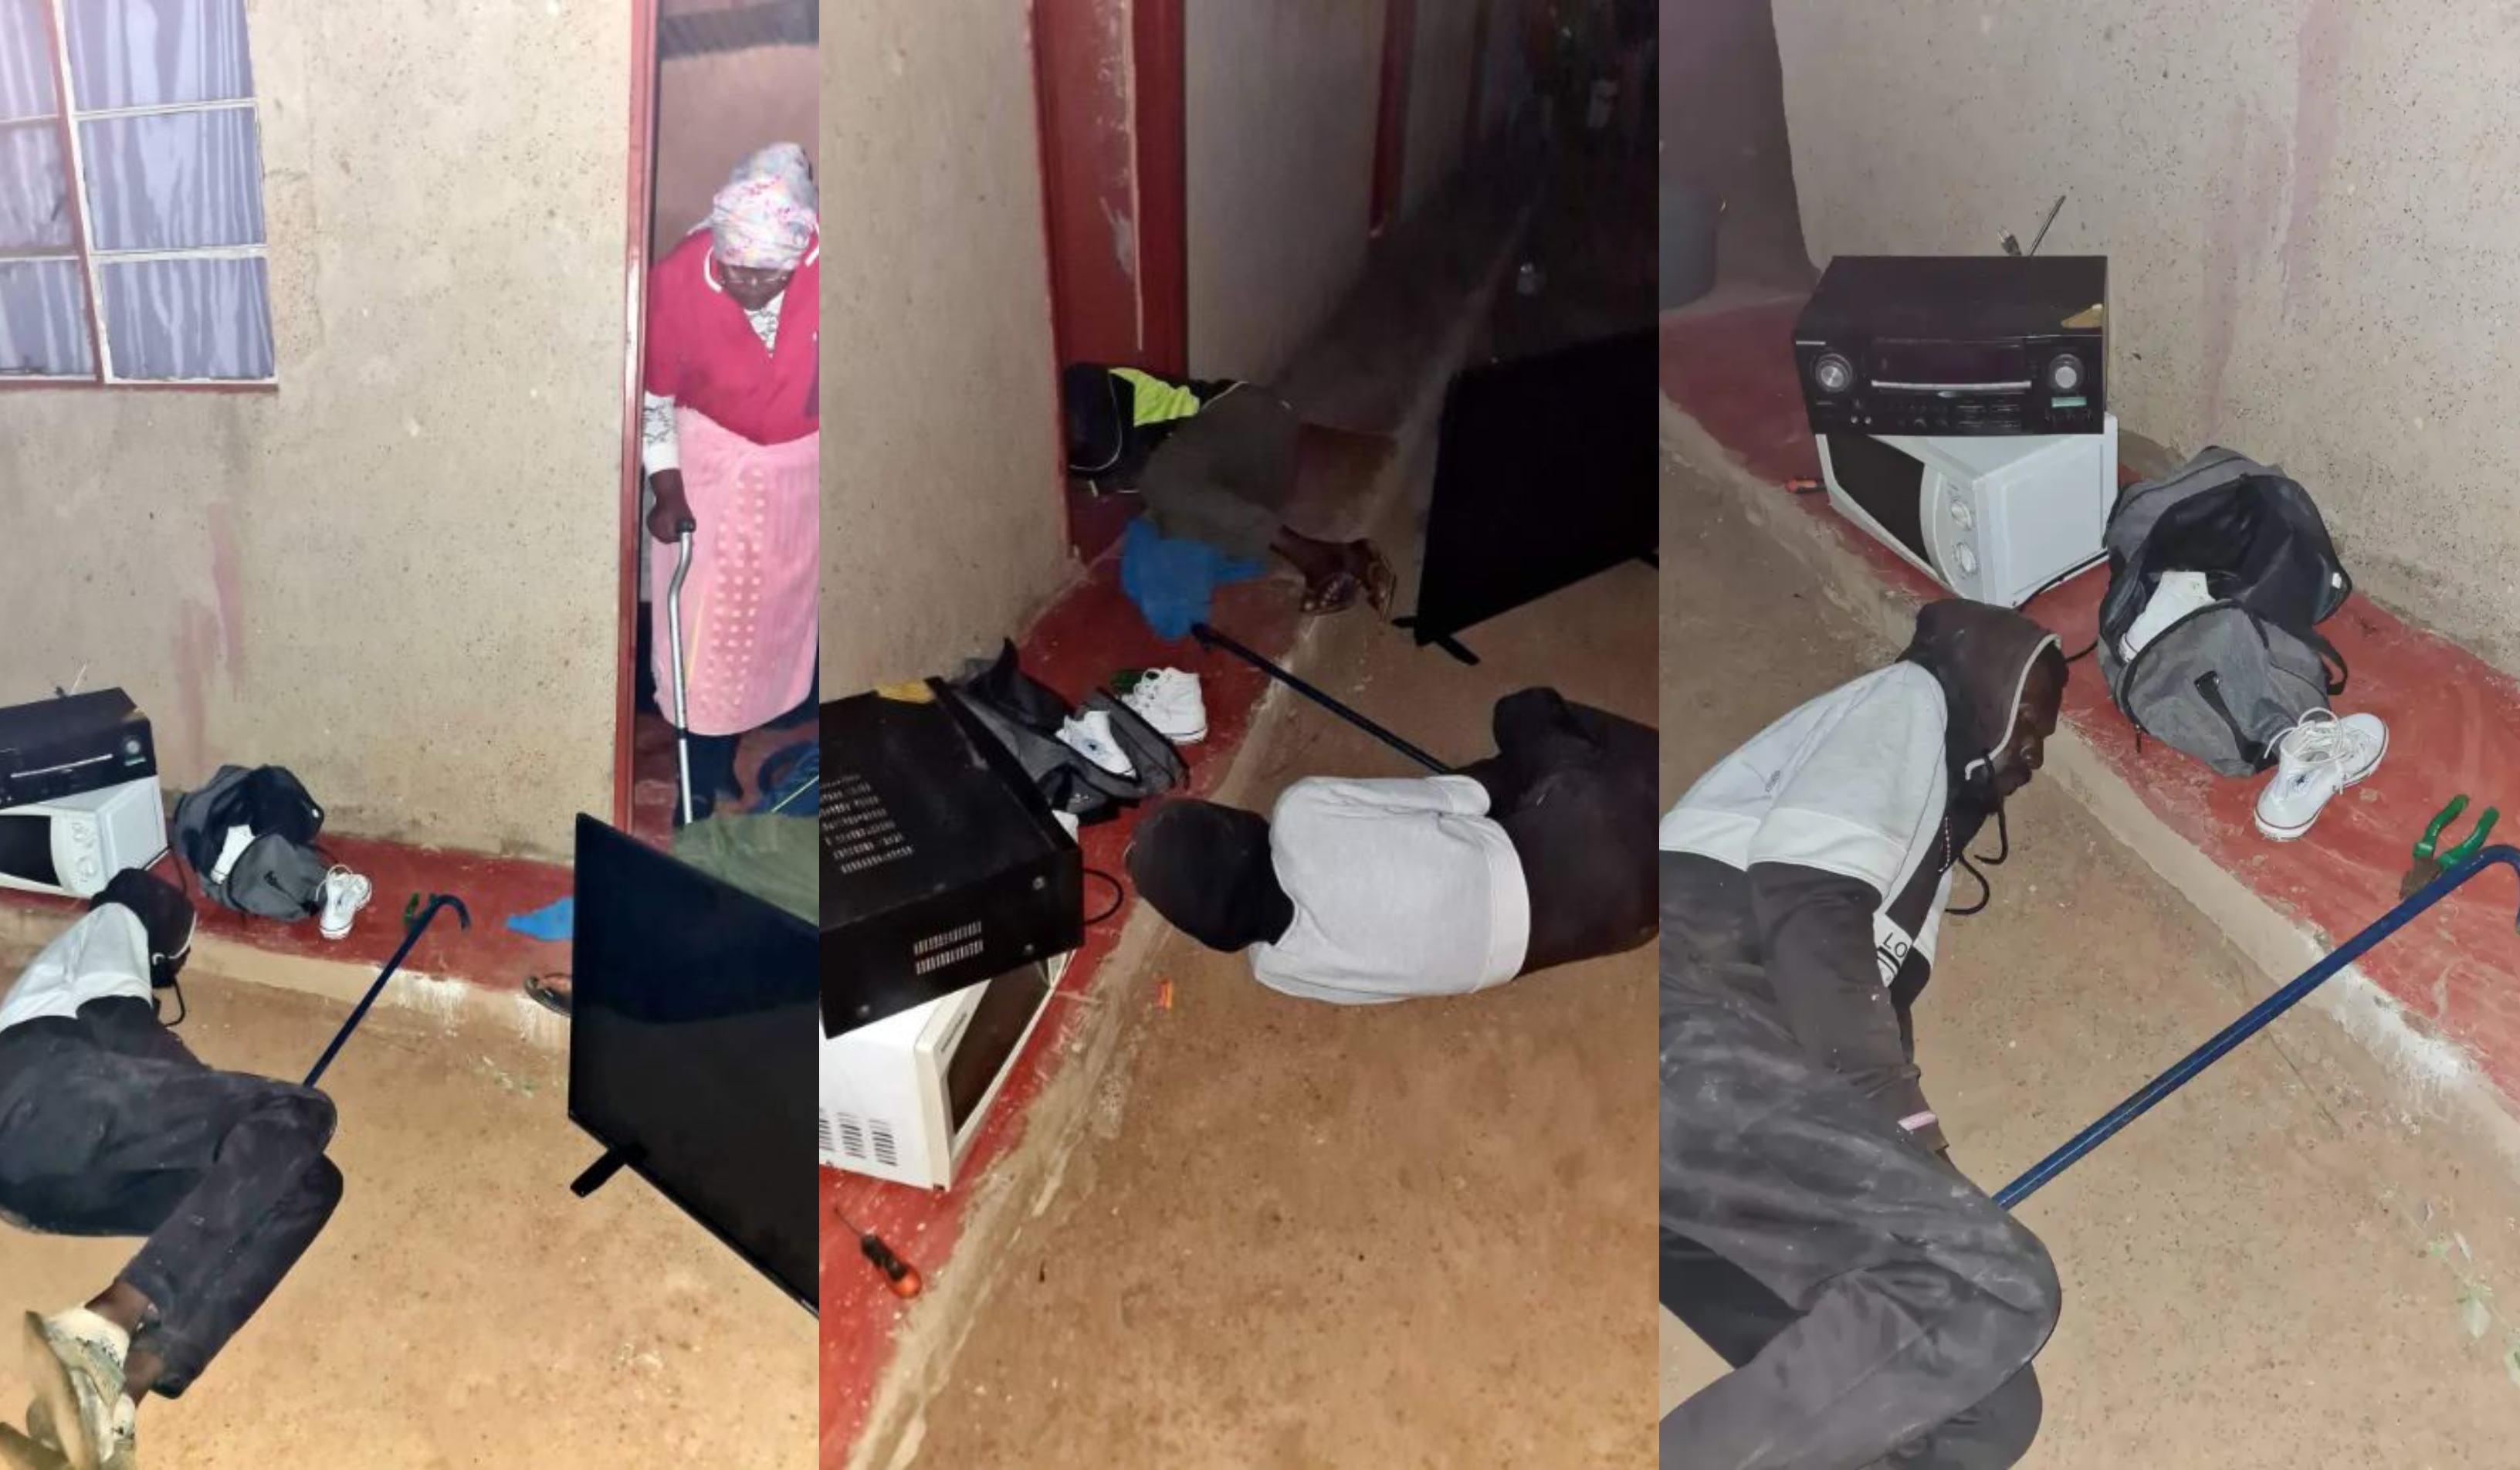 Robbers fall asleep after stealing elderly woman’s belongings (video)